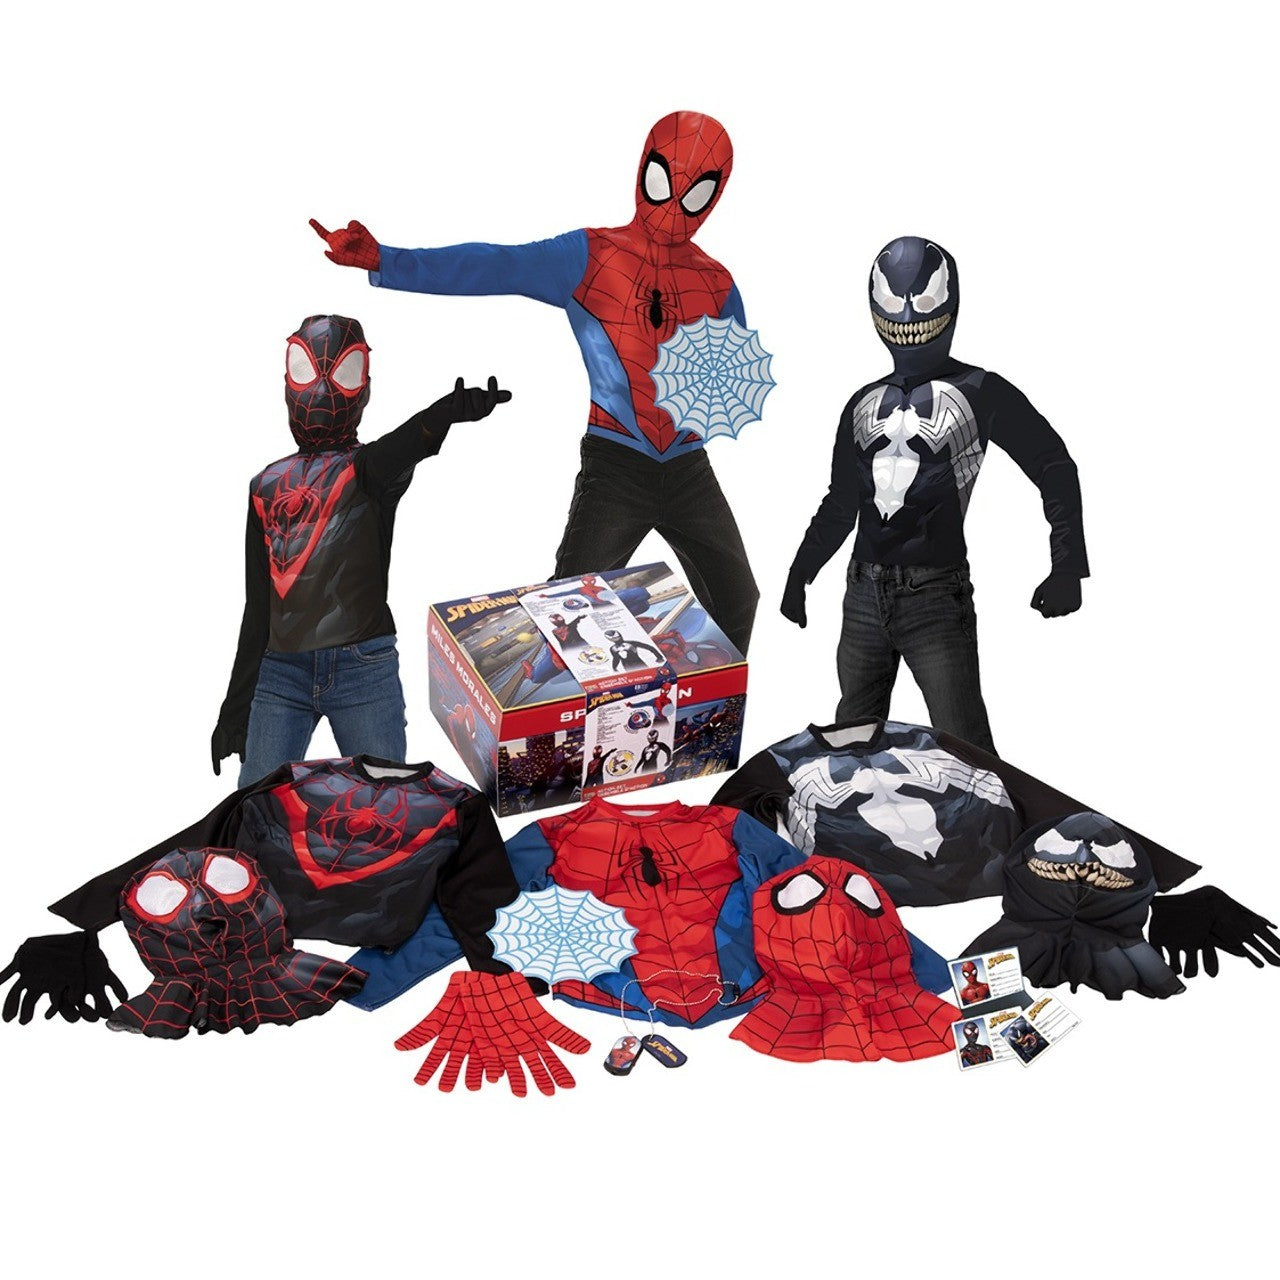 Acquista online scatola di costumi Spiderman™ per bambini con 3